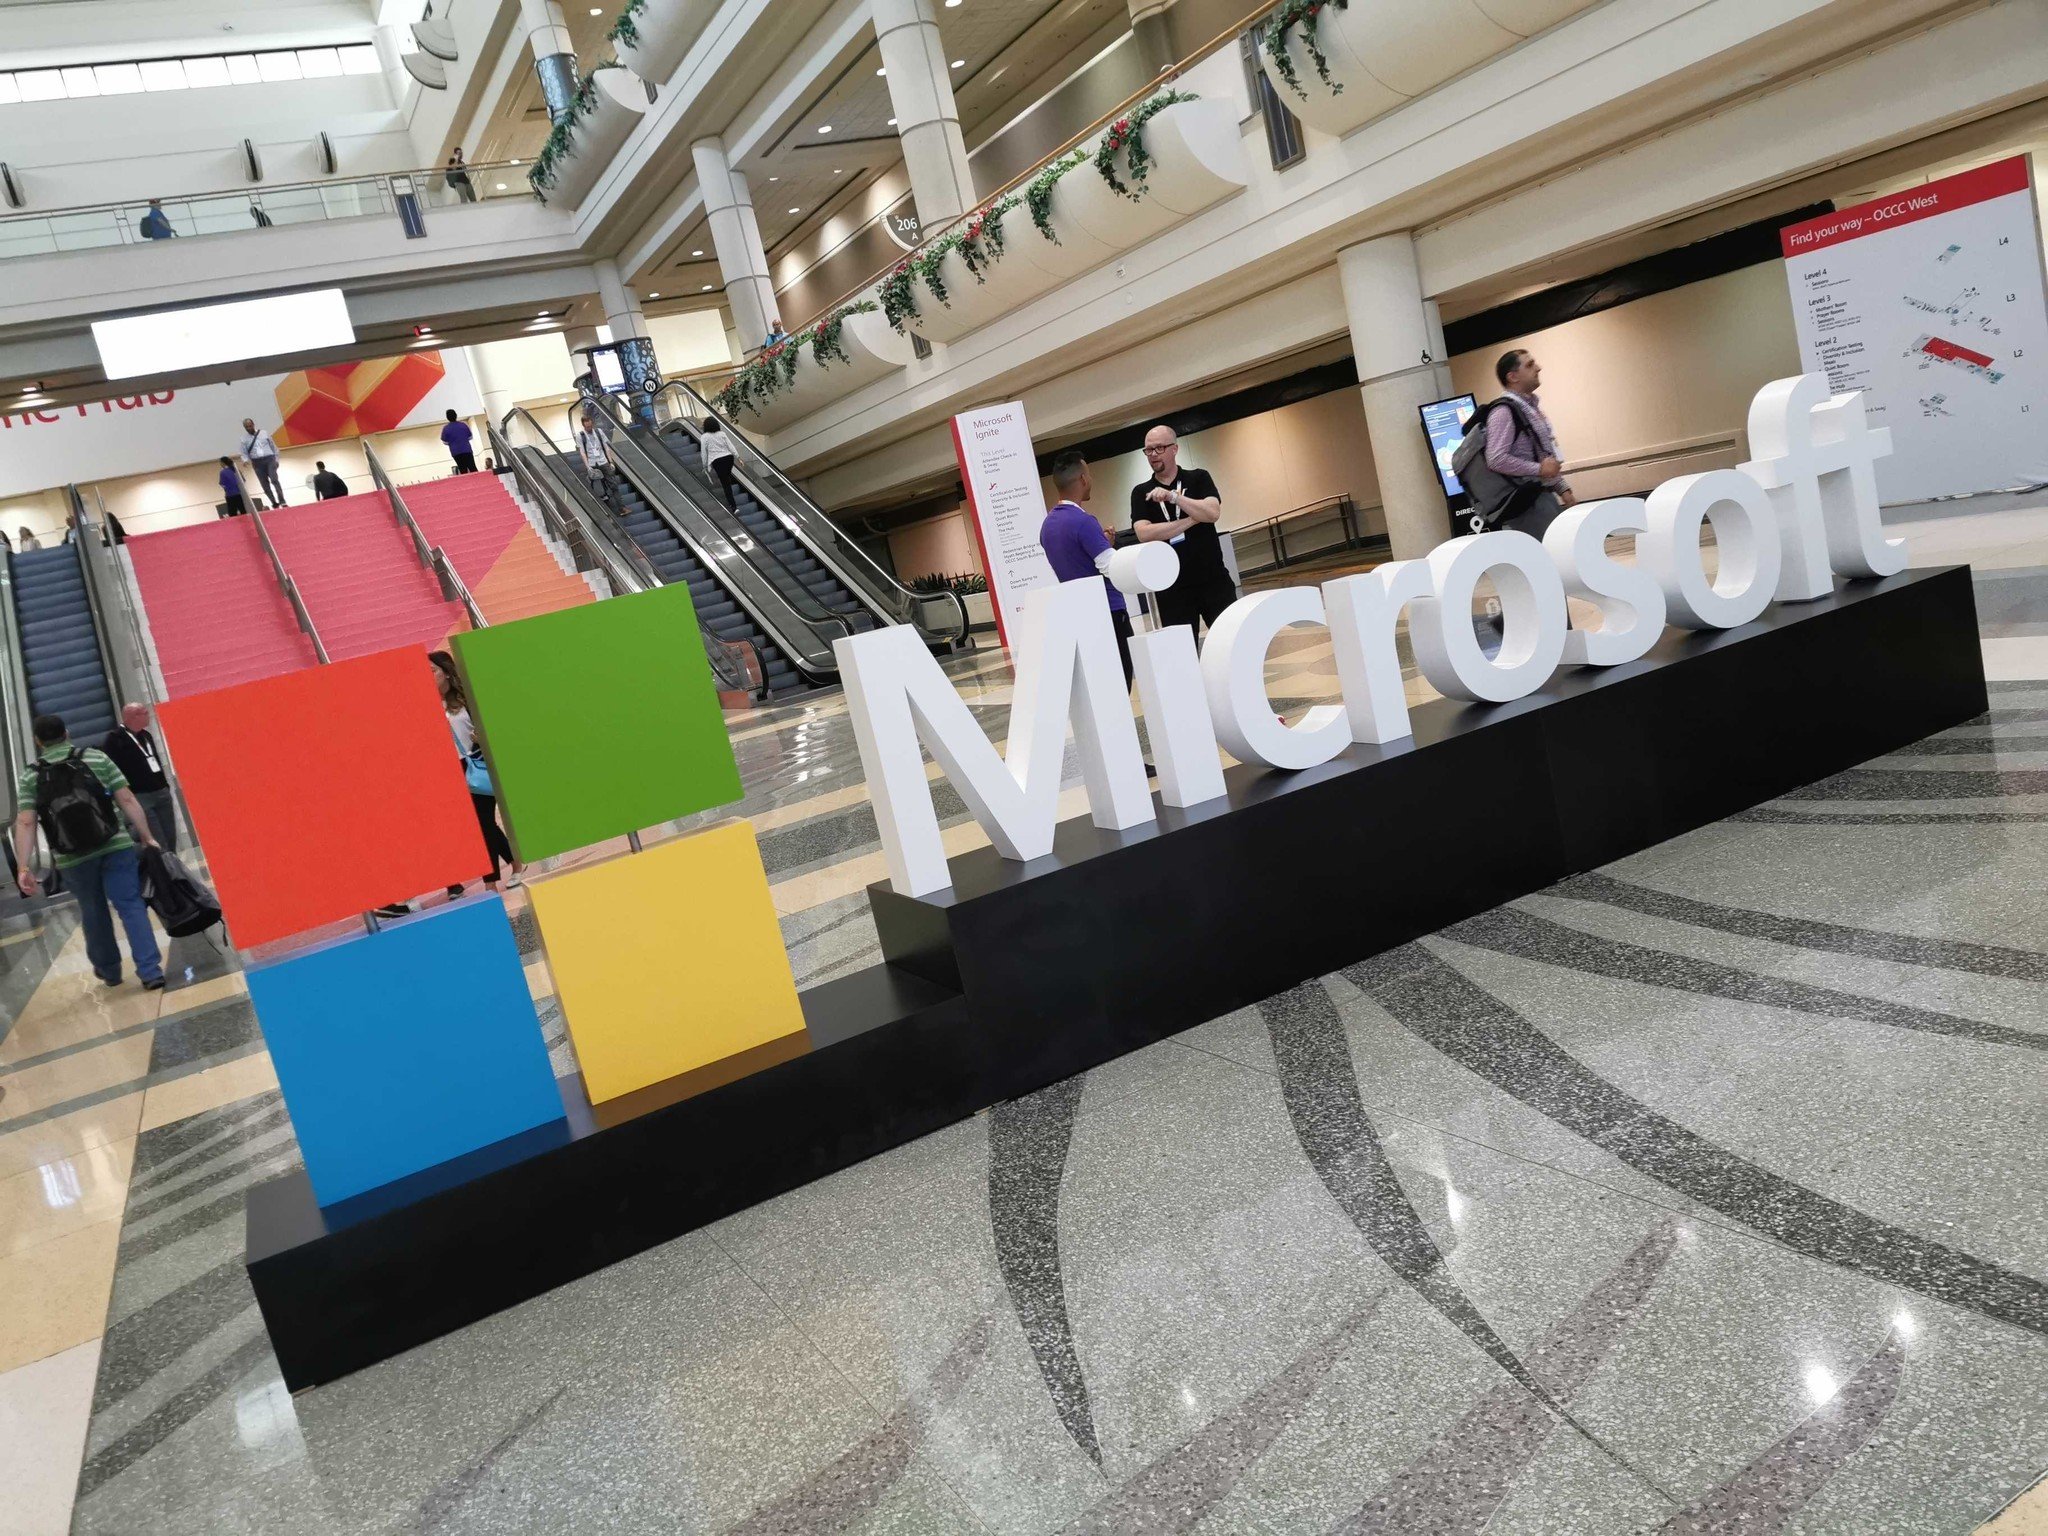 EU antitrust regulator to look further into Microsoft's Nuance deal